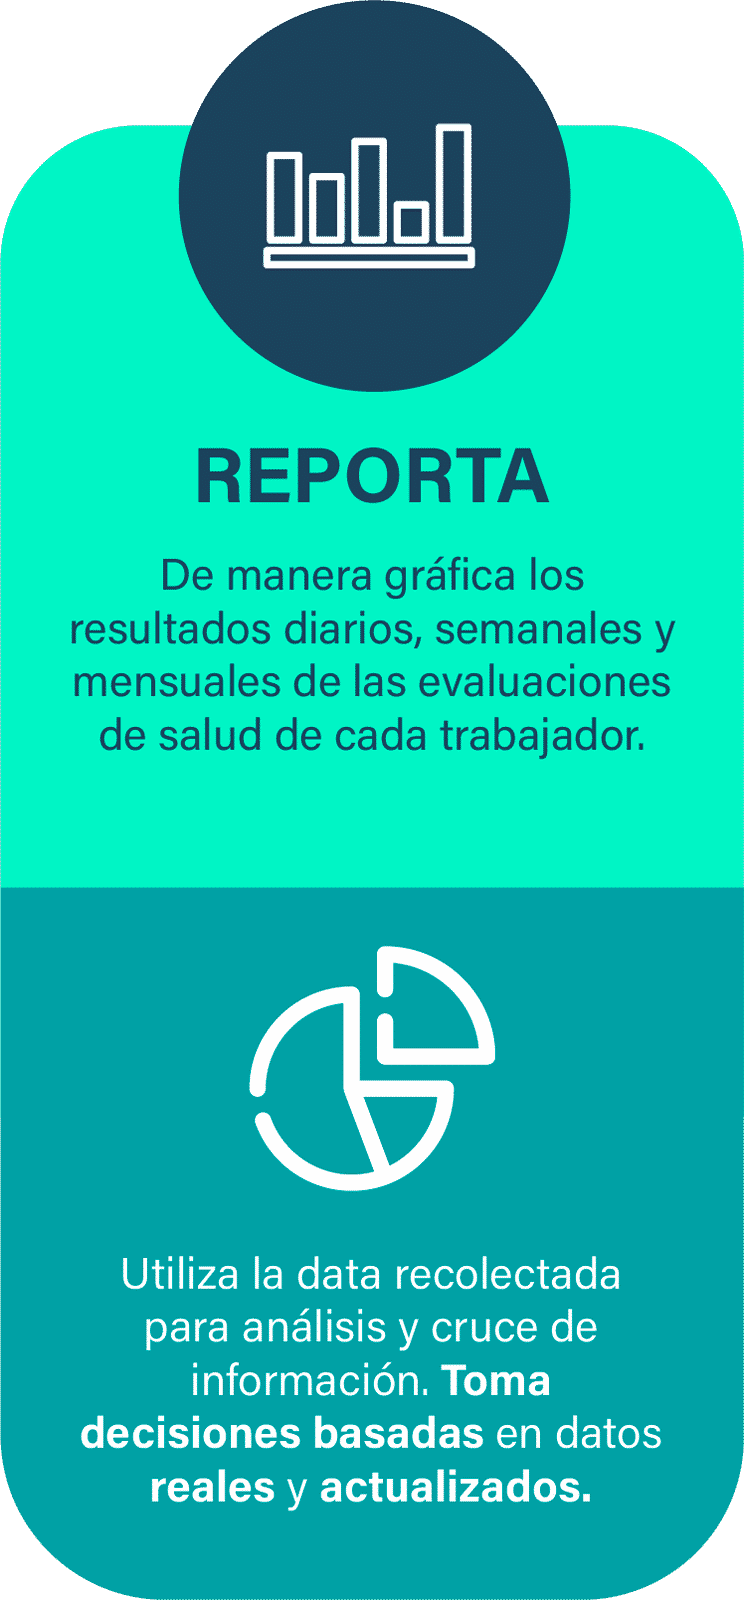 REPORTA